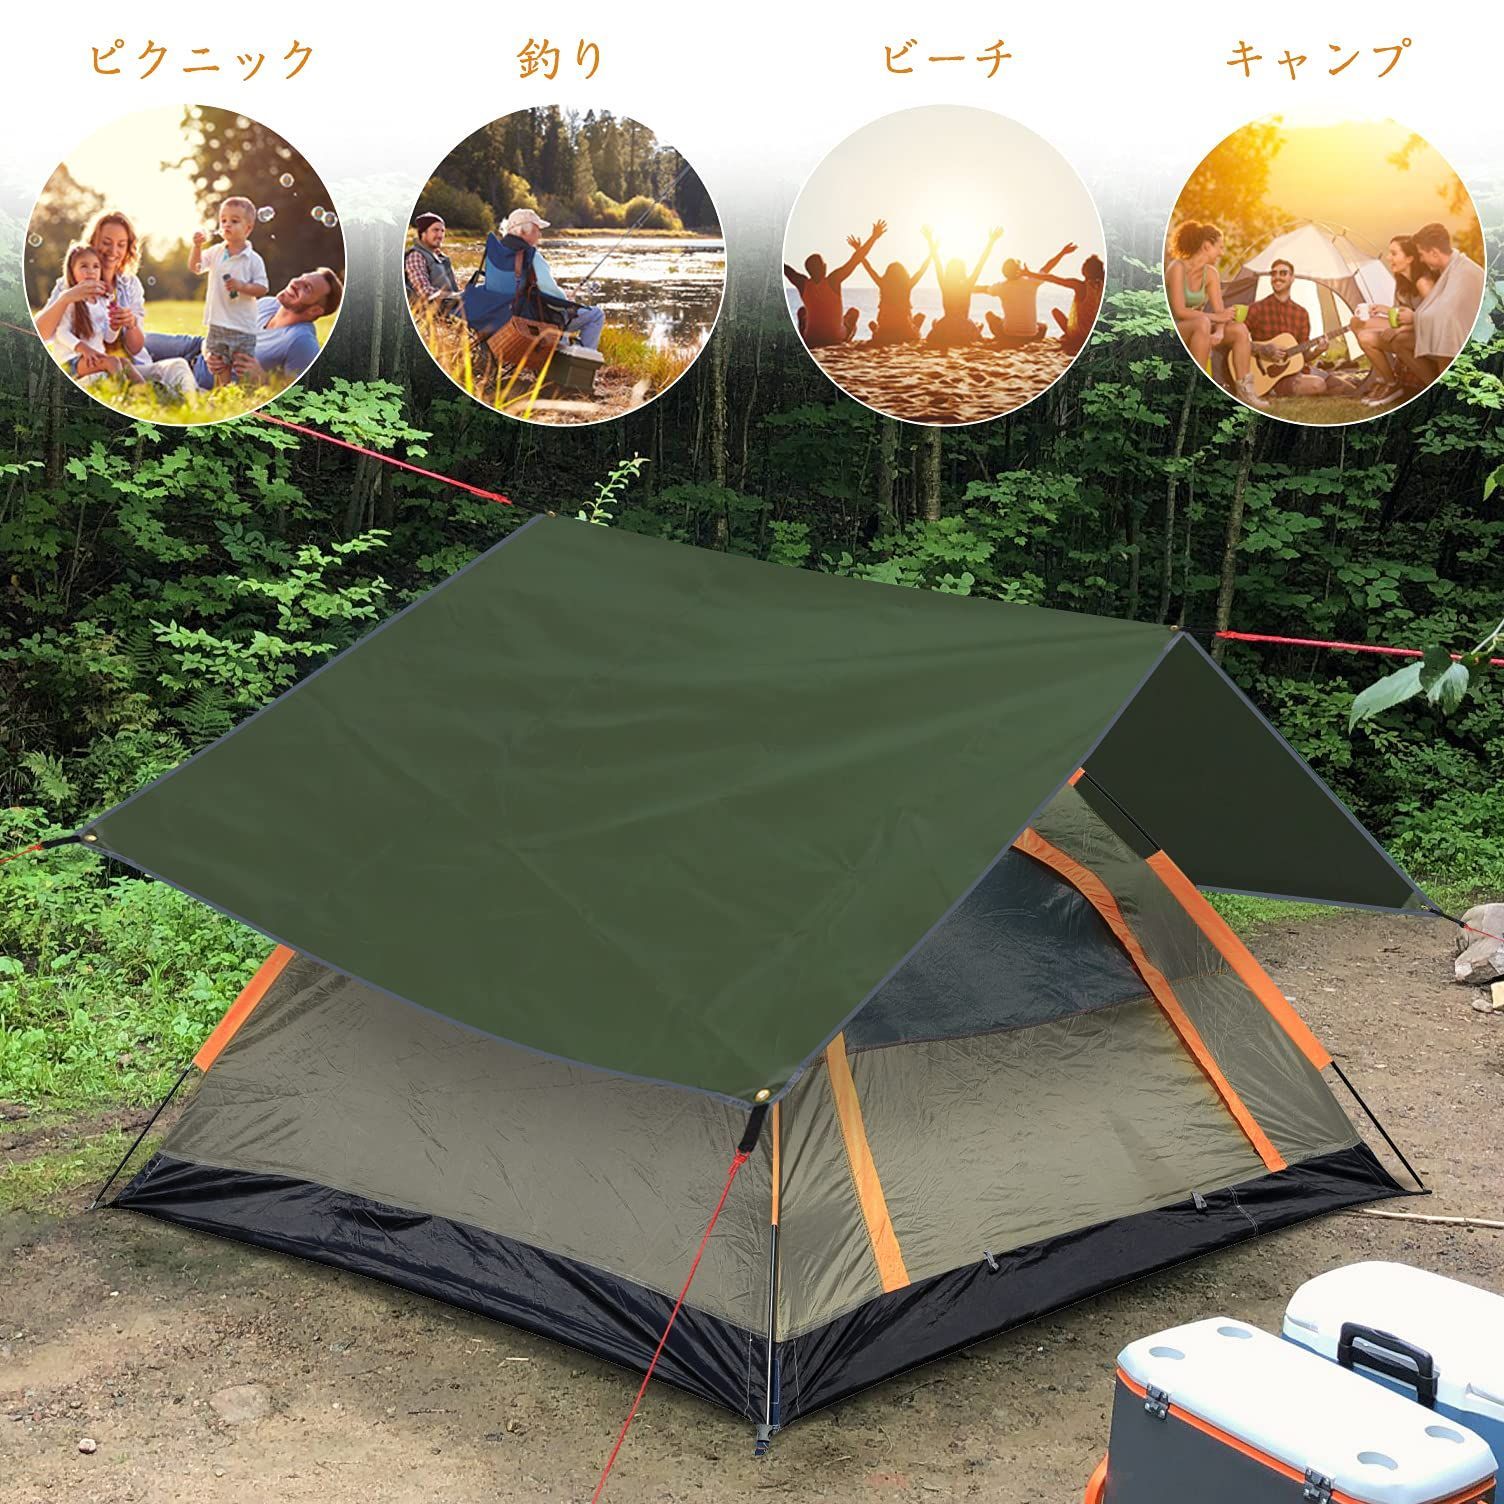 売上実績NO.1 Yueranhu グランドシート テント シート 防水 コンパクト 10サイズ選択可能 アウトドア キャンプ 登山 ピクニック マット  レジャーシート